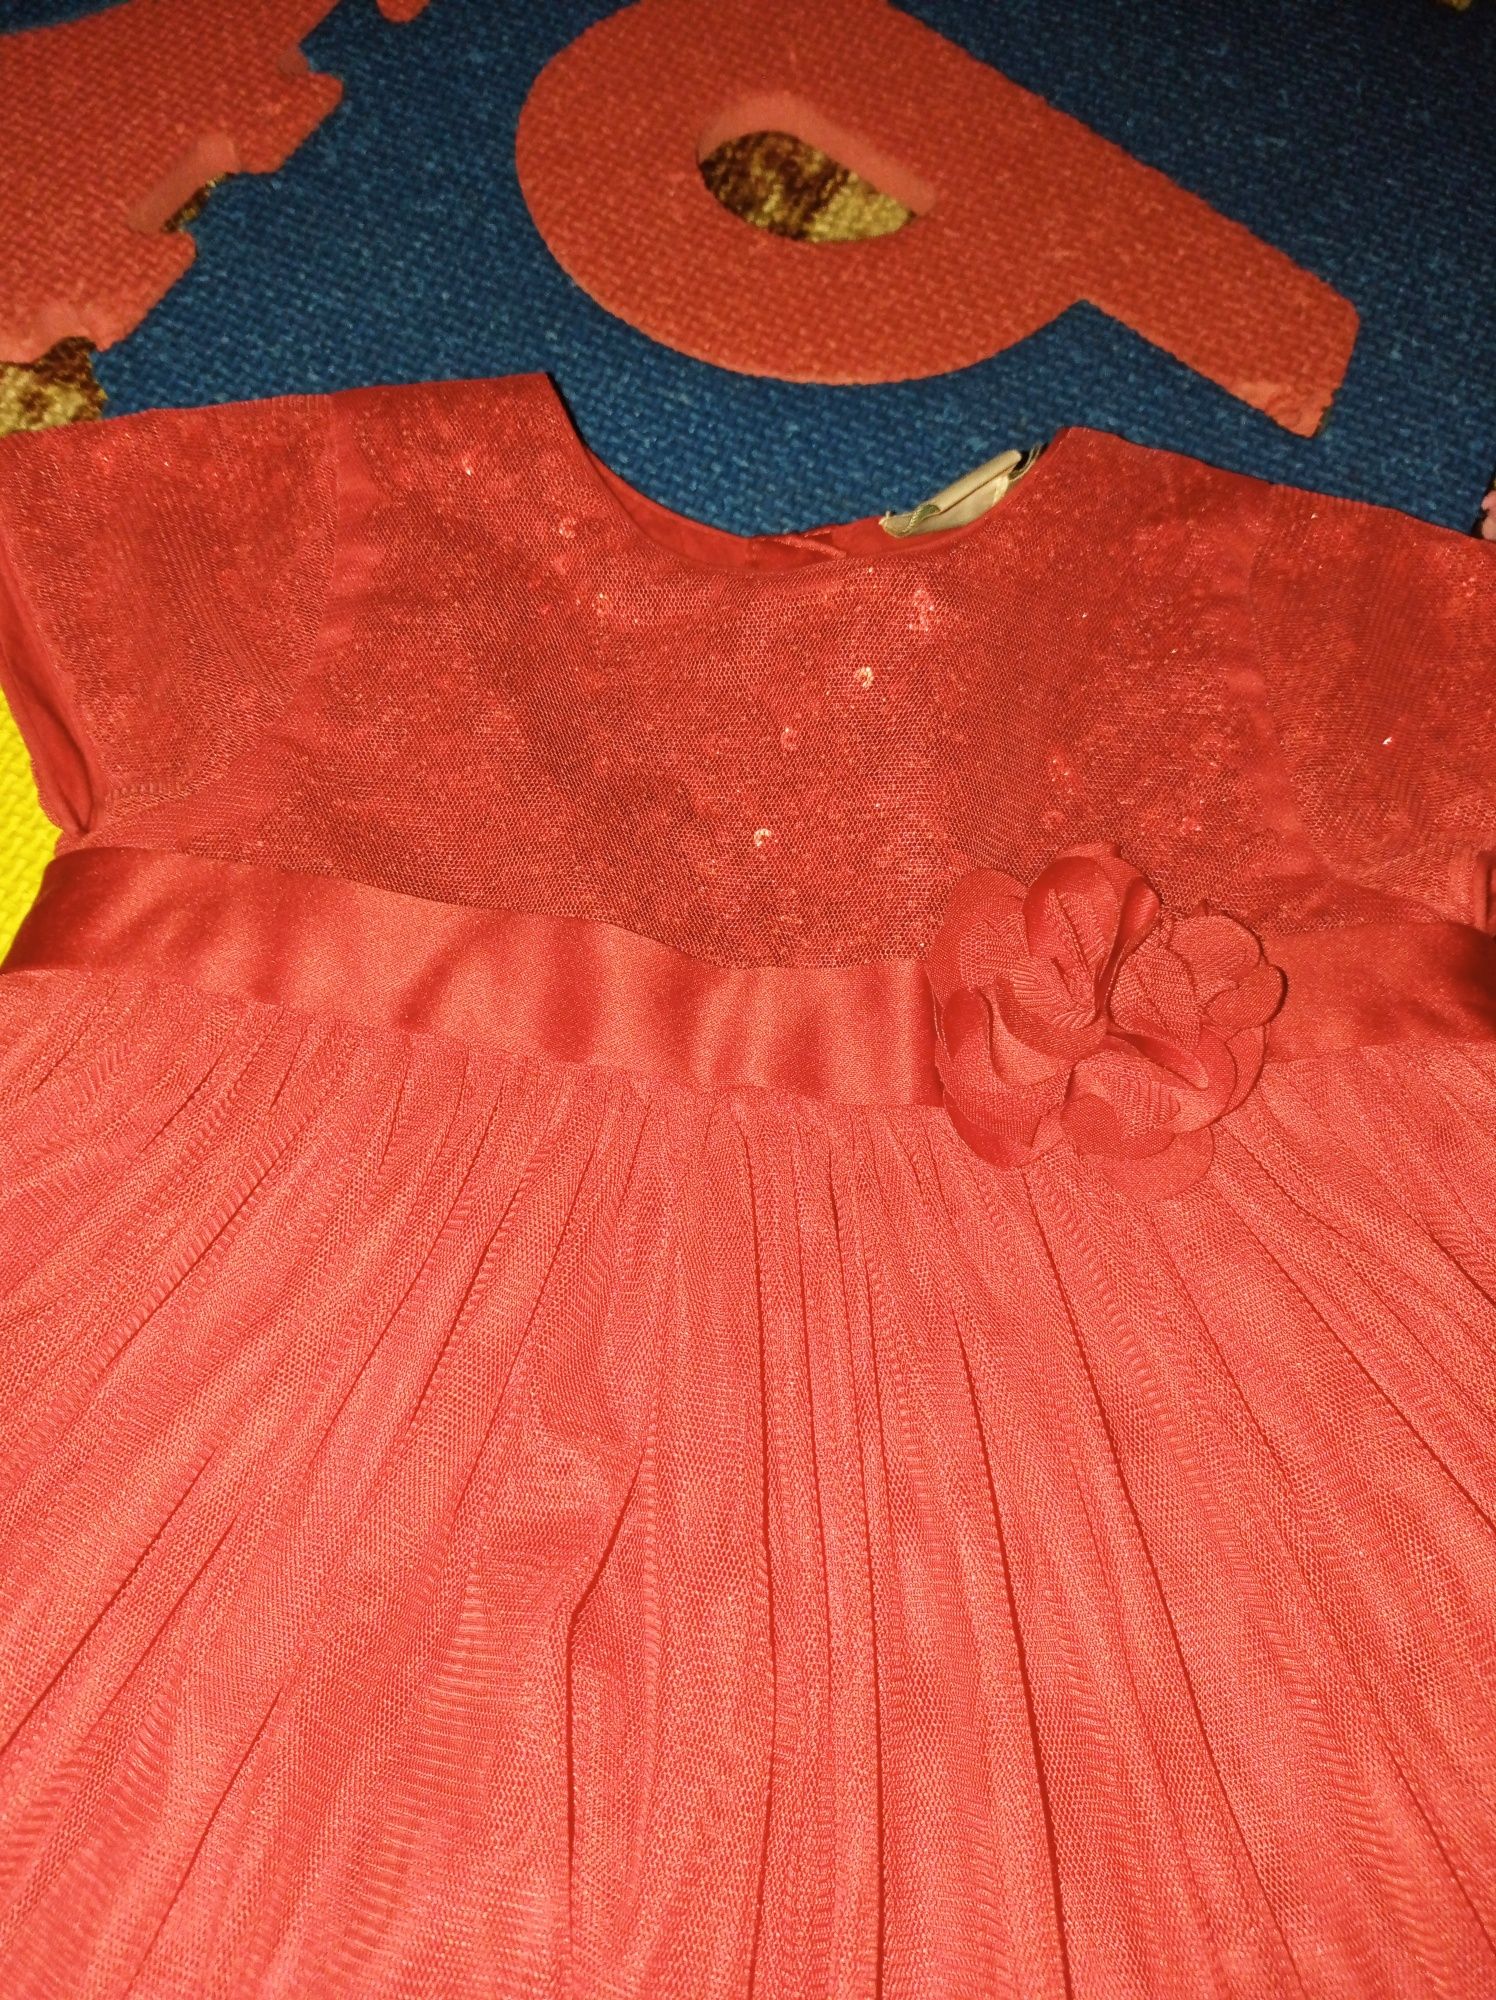 Святкова сукня для дівчинки 2-3 роки 86-92-98см